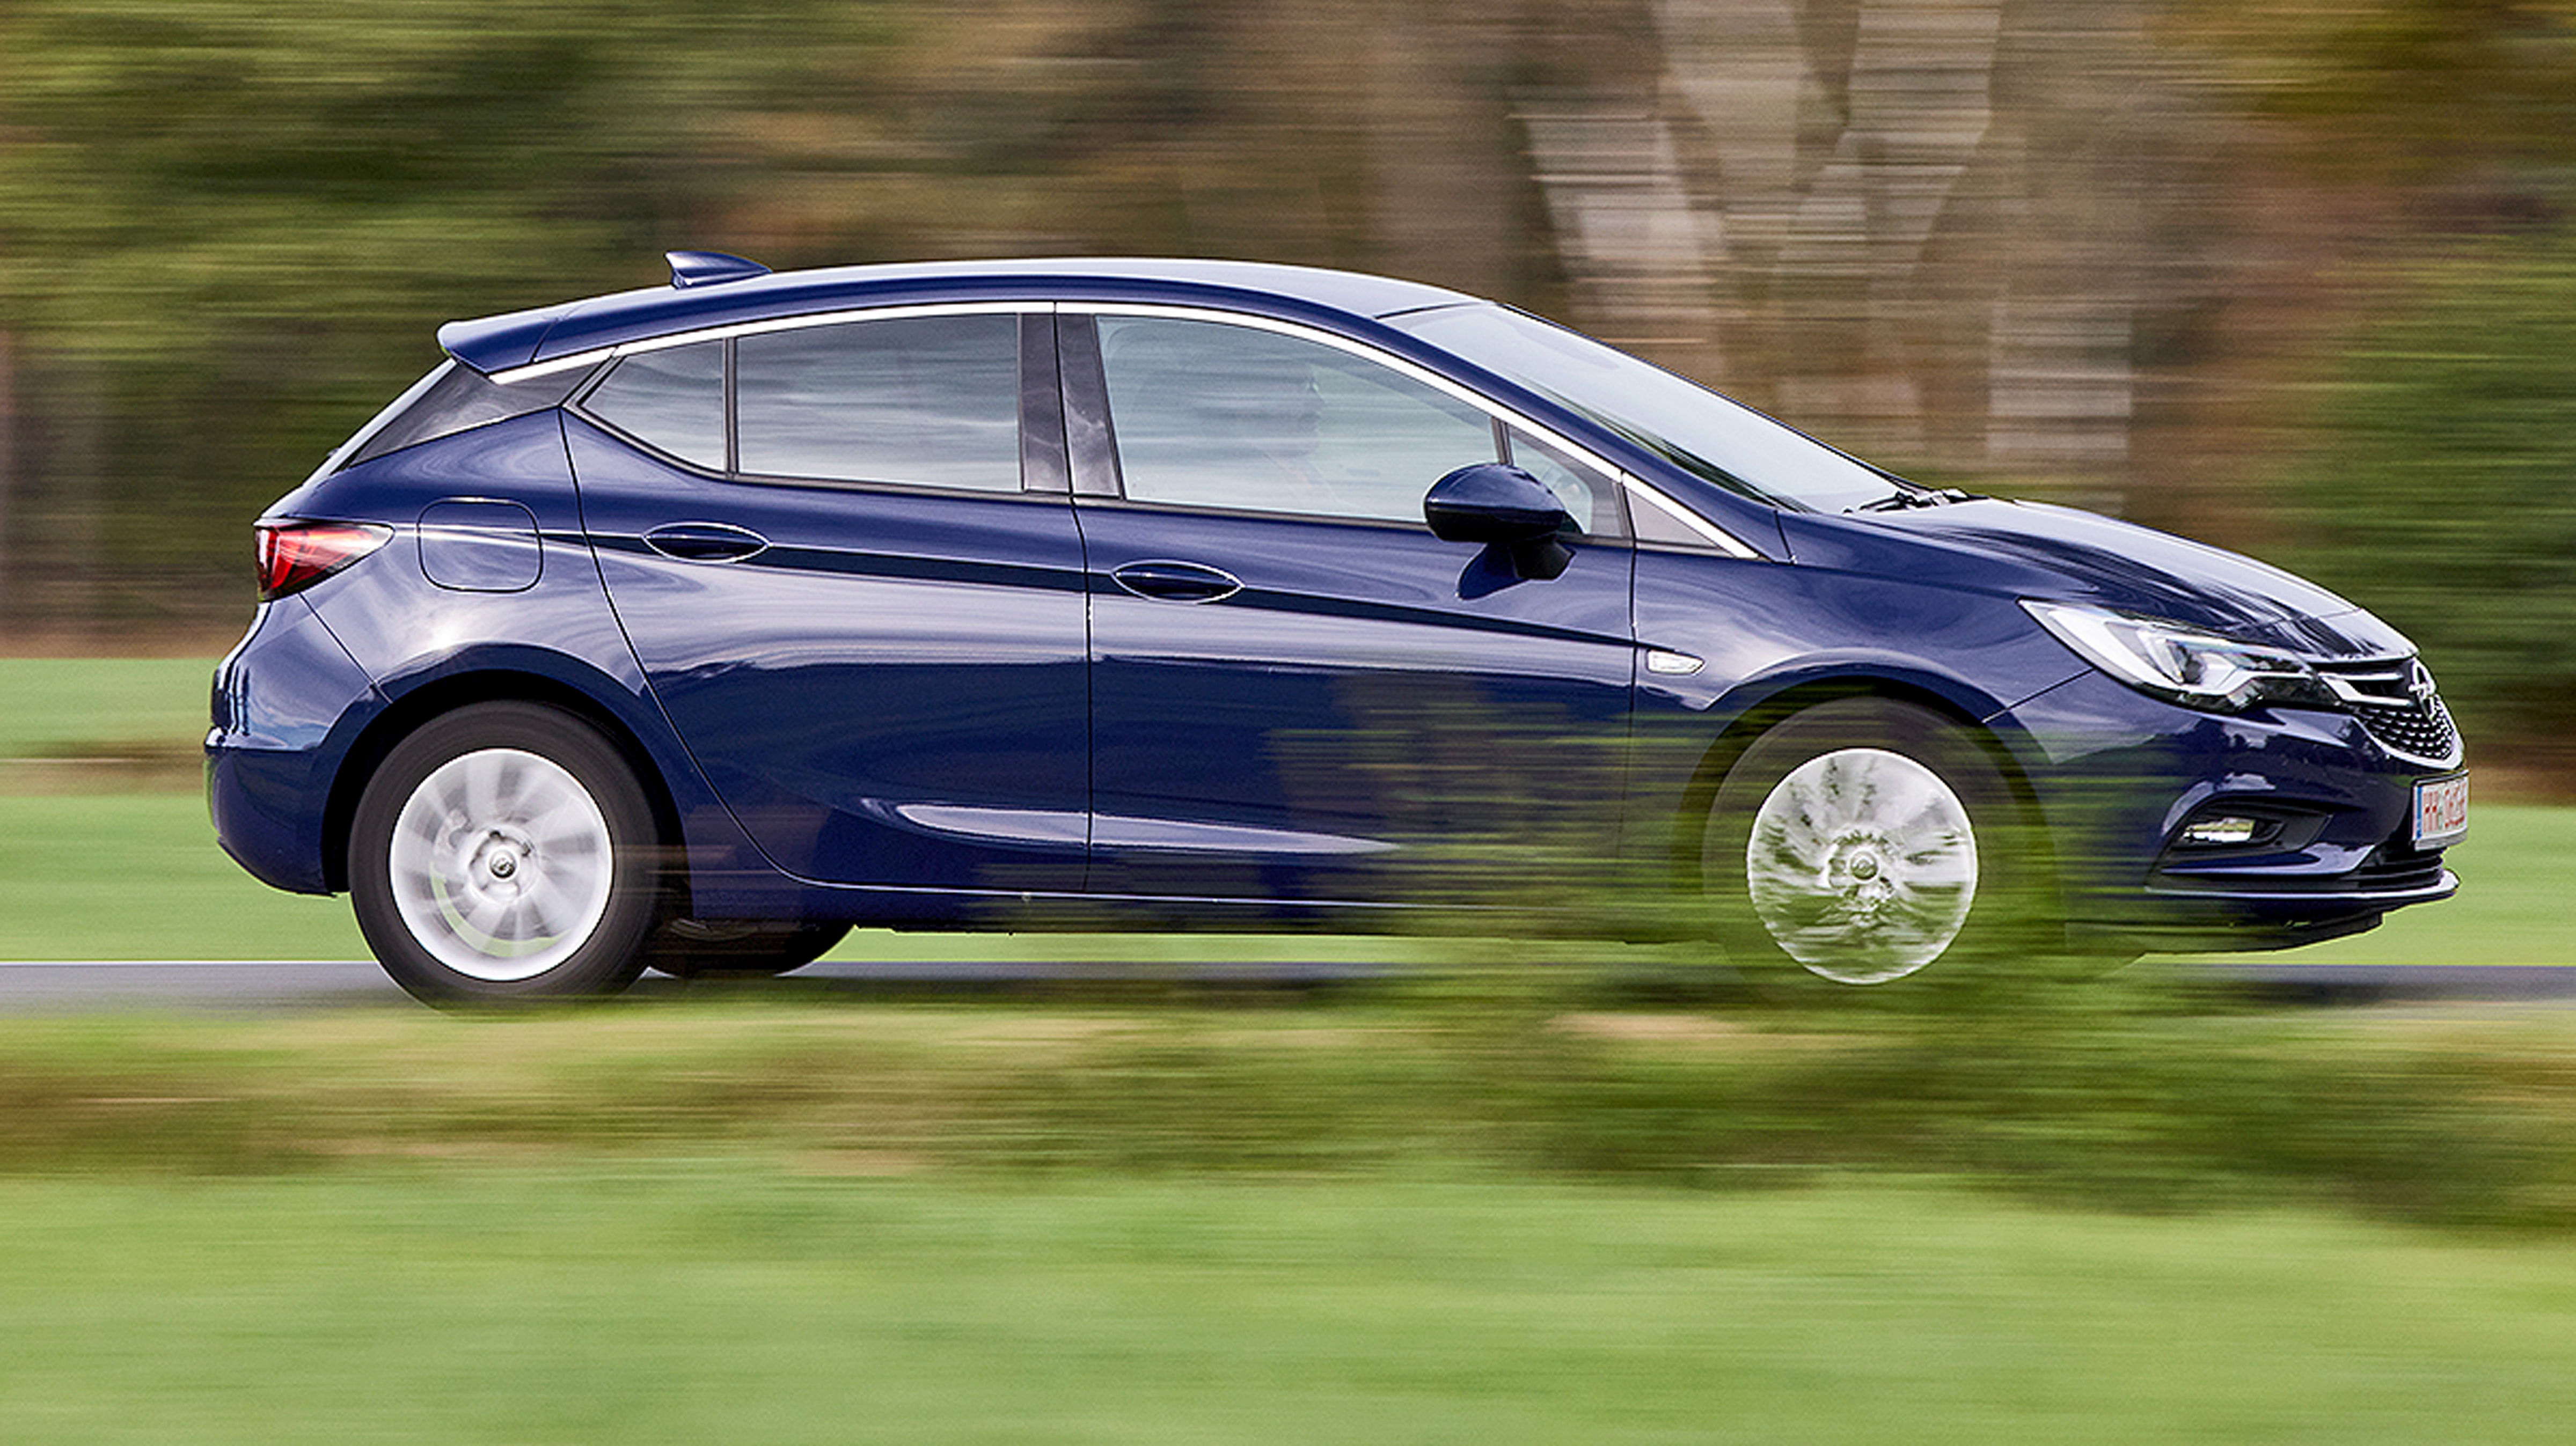 Fahrbericht: Opel Astra Sportstourer 1.6 CDTI im Praxistest - Schwer in  Fahrt